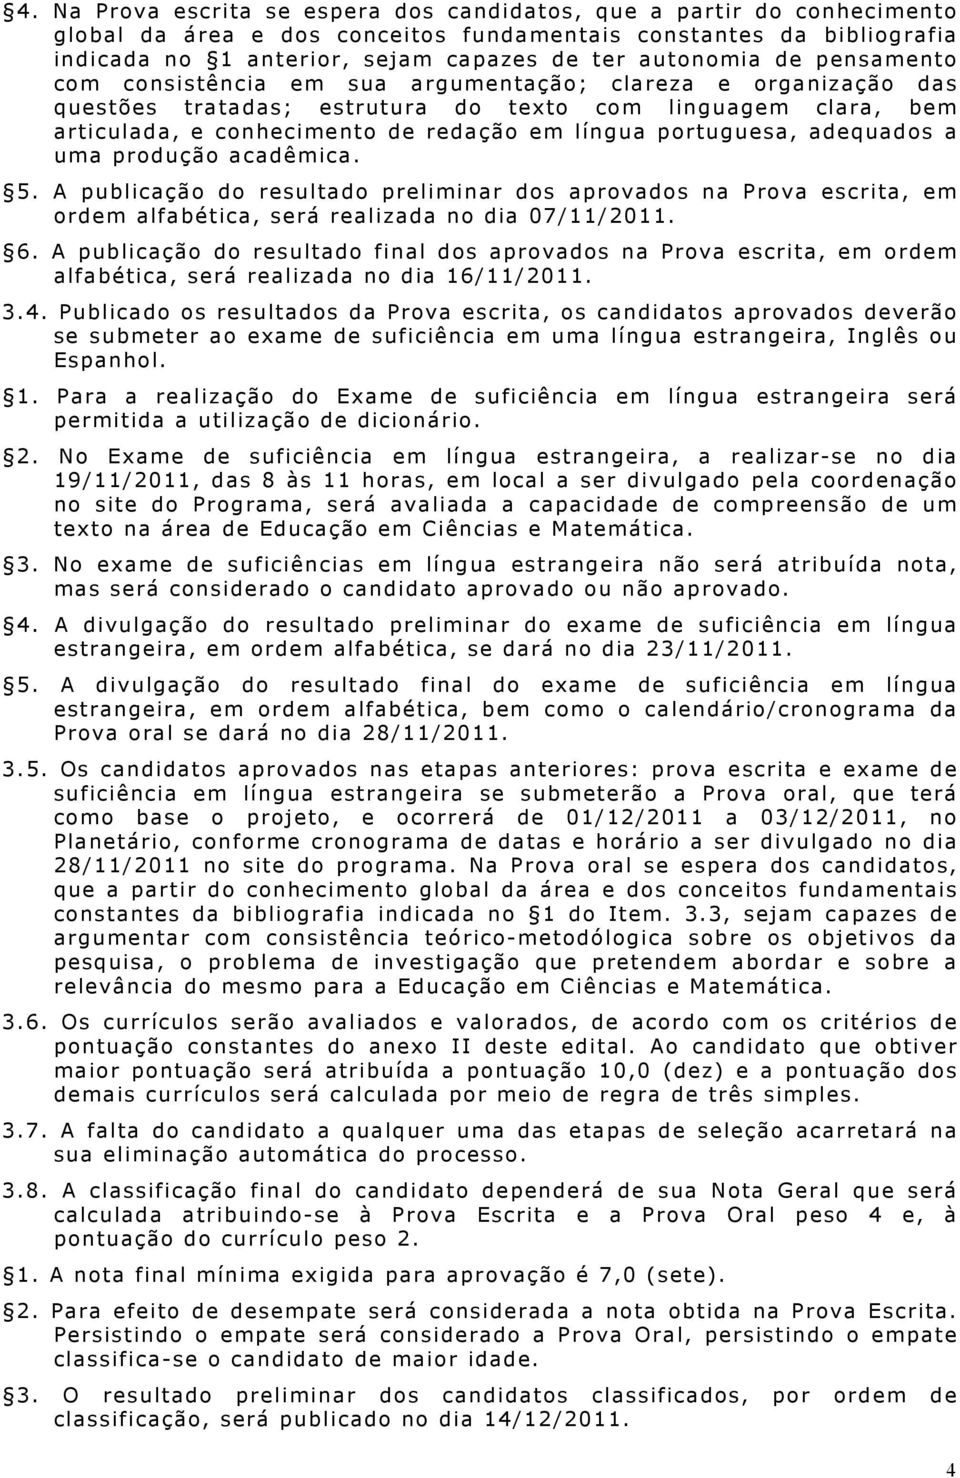 portuguesa, adequados a uma produção acadêmica. 5. A publicação do resultado preliminar dos aprovados na Prova escrita, em ordem alfabética, será realizada no dia 07/11/2011. 6.